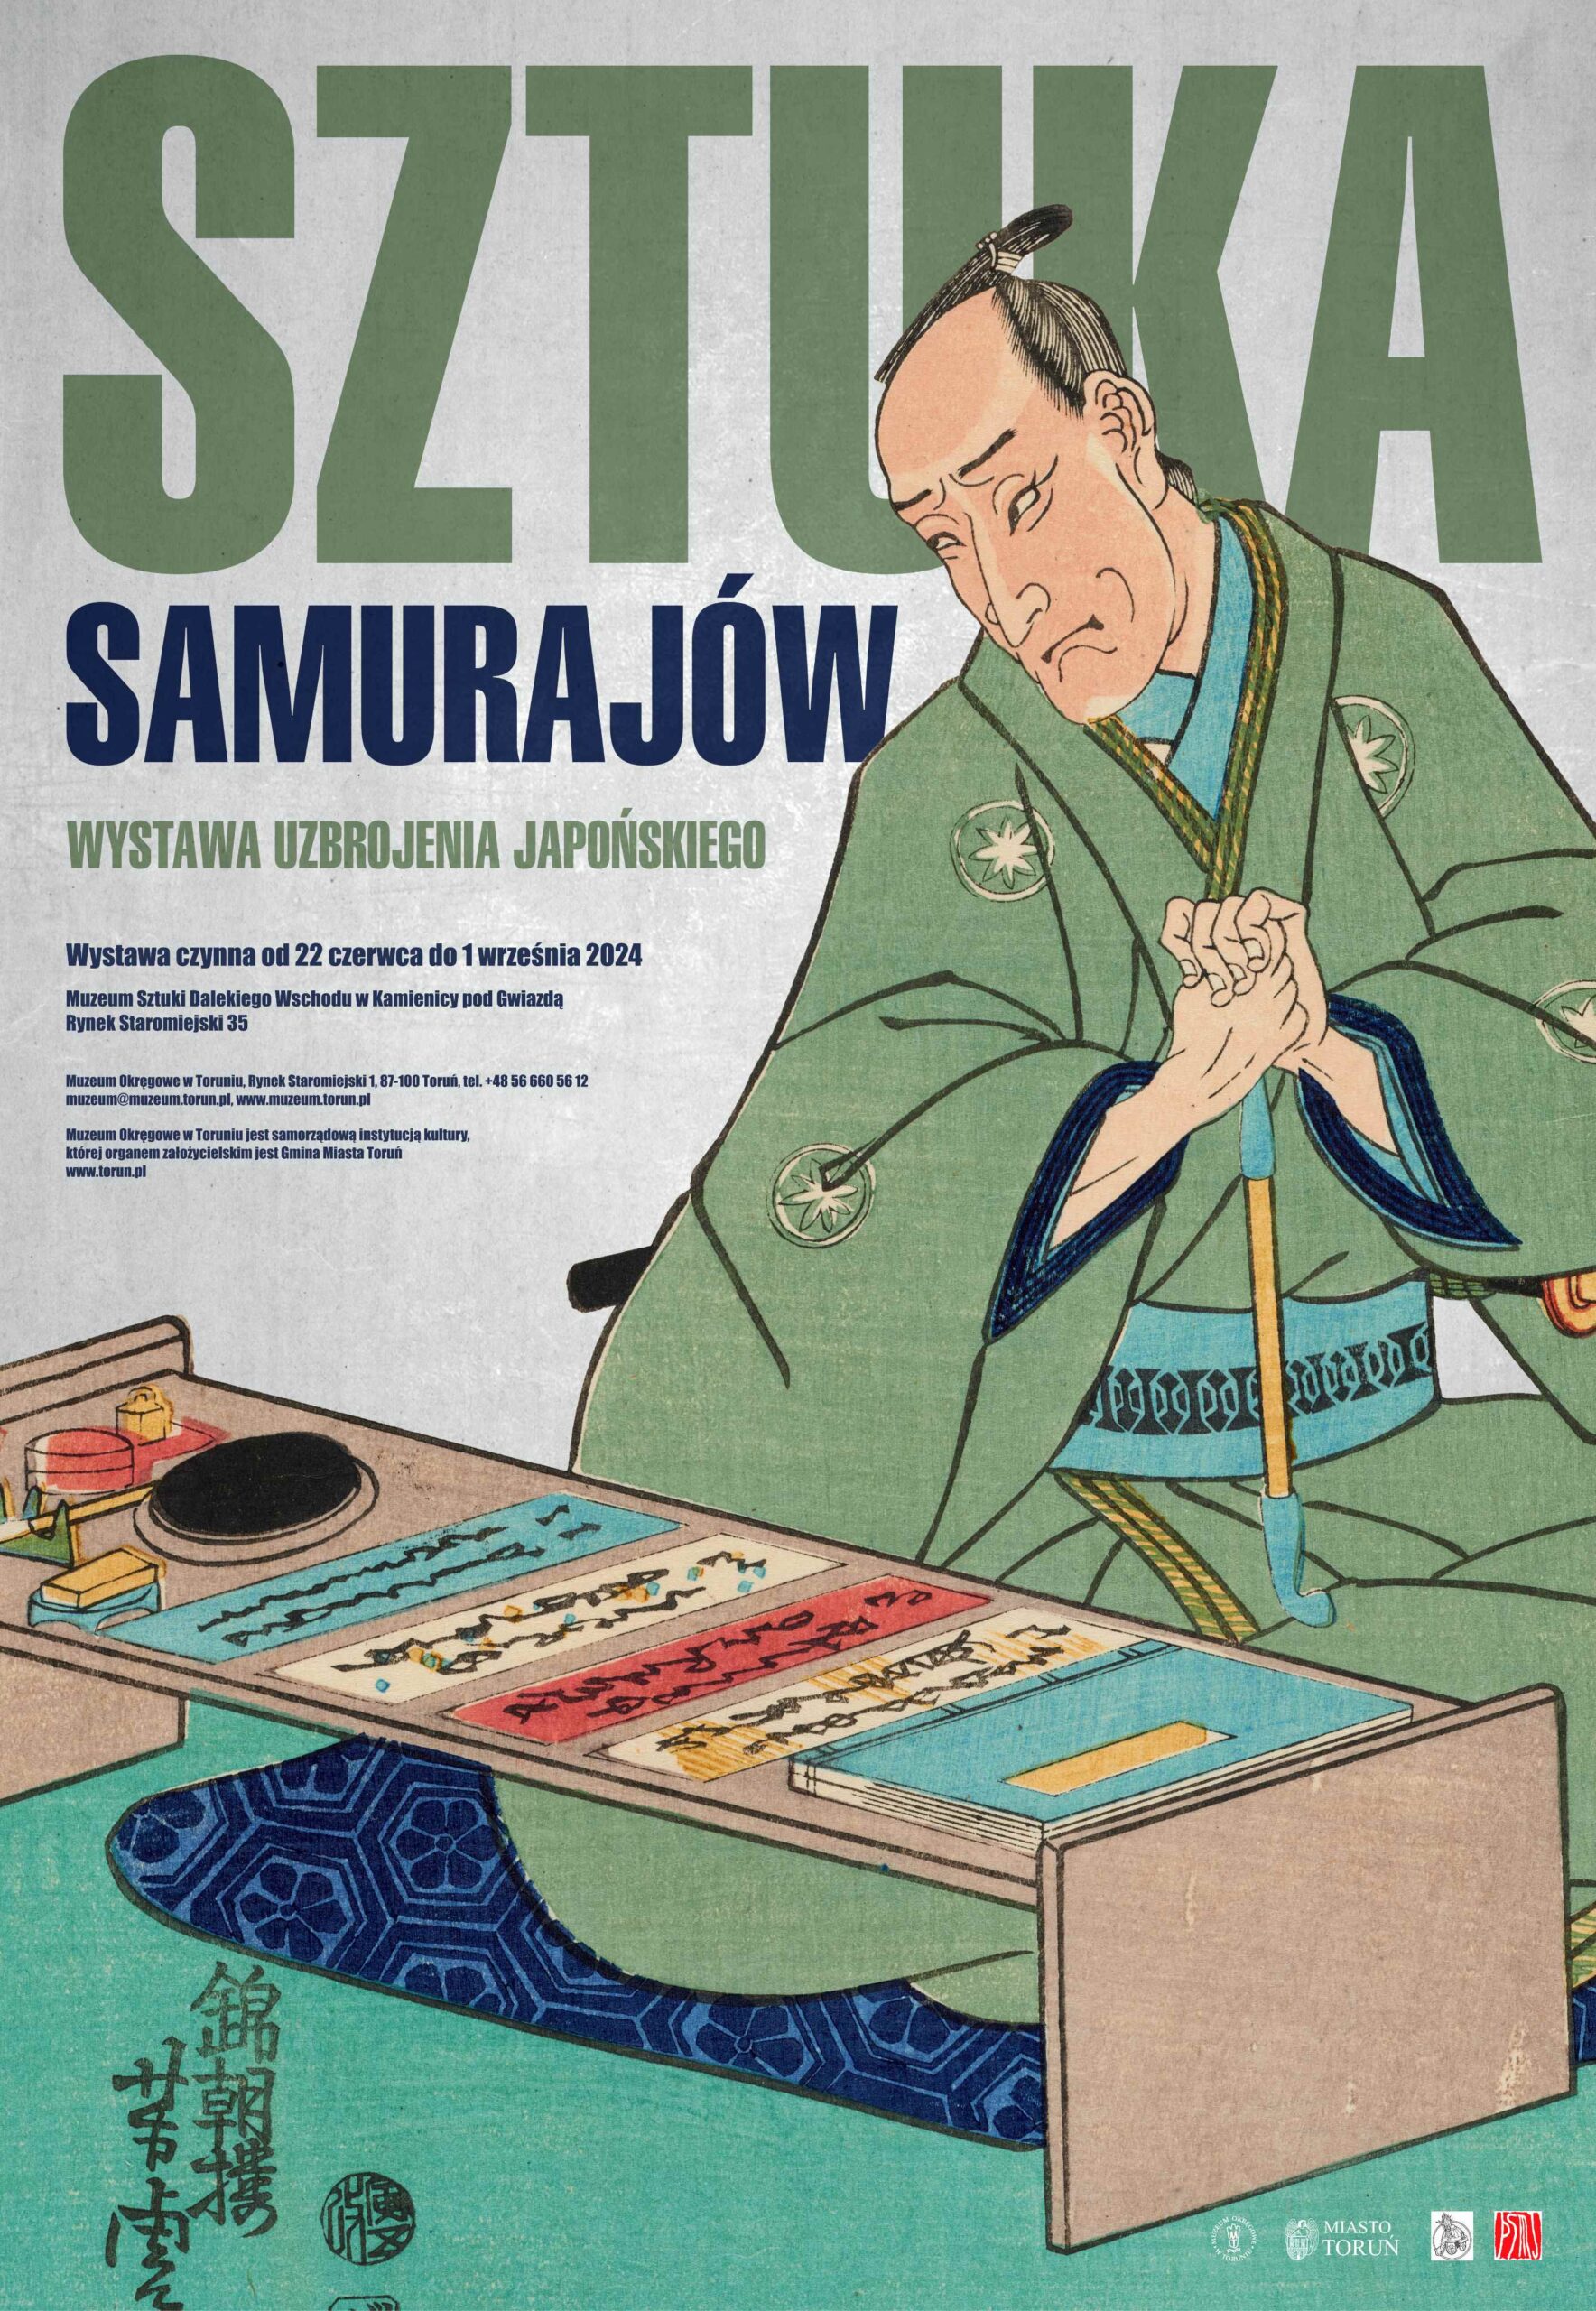 Plakat informujący o wystawie Sztuka Samurajów